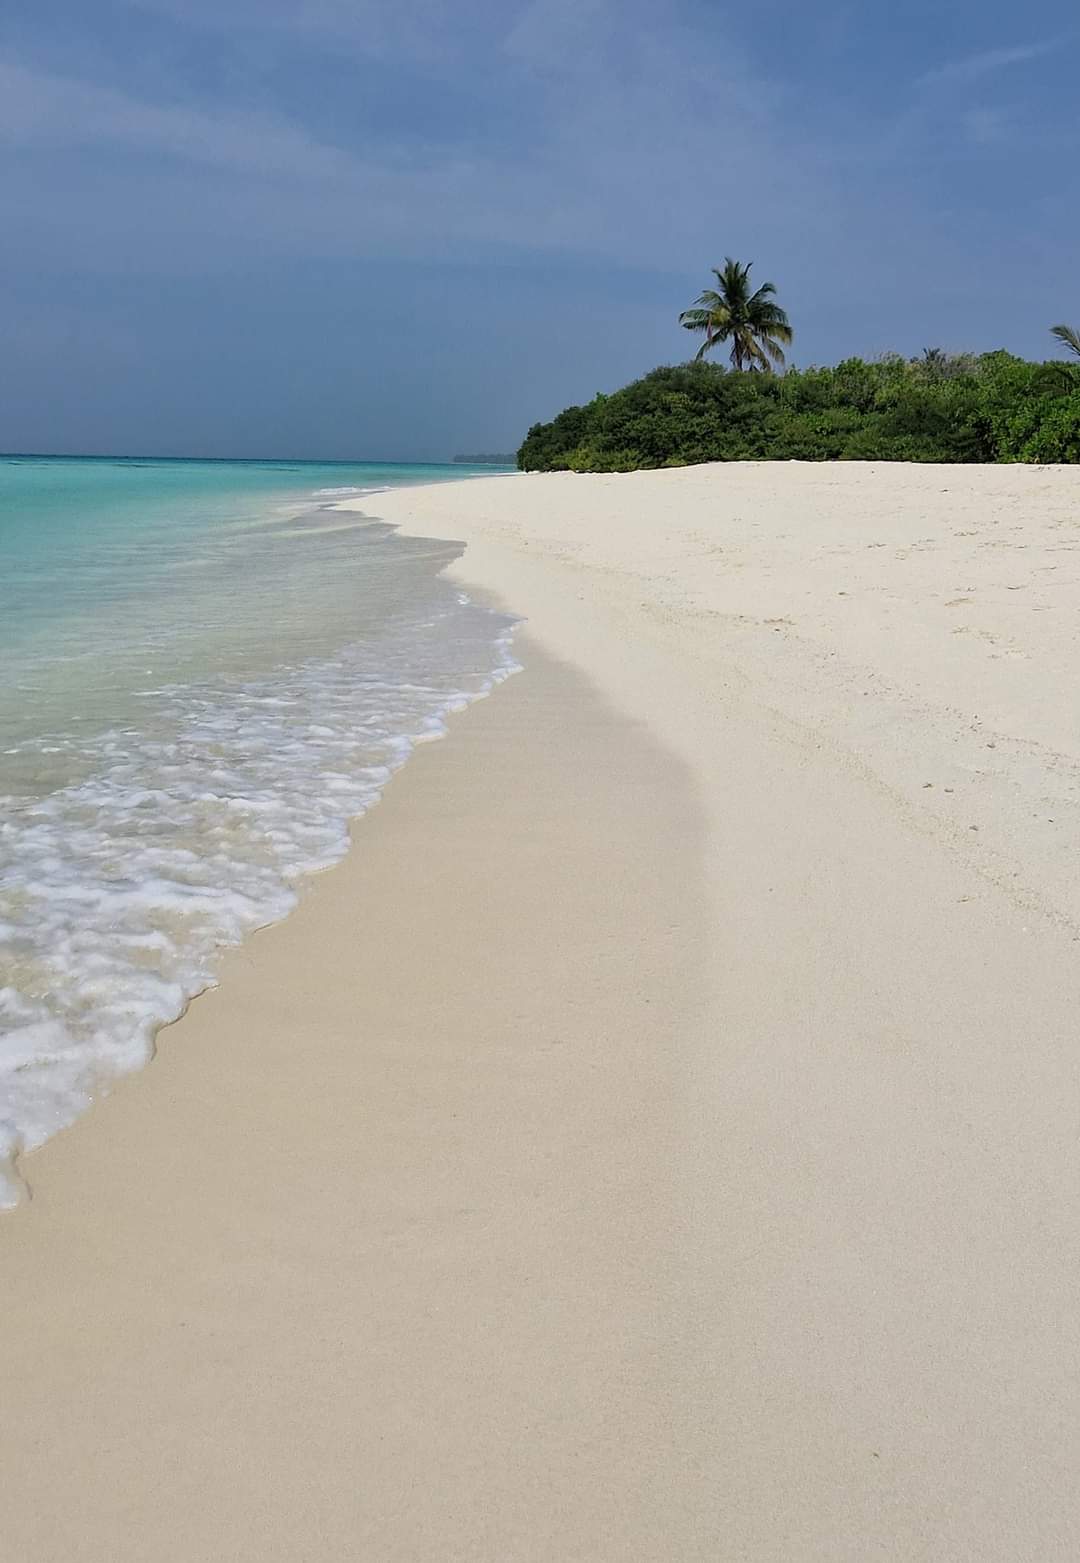 A beautiful beach in the Maldives